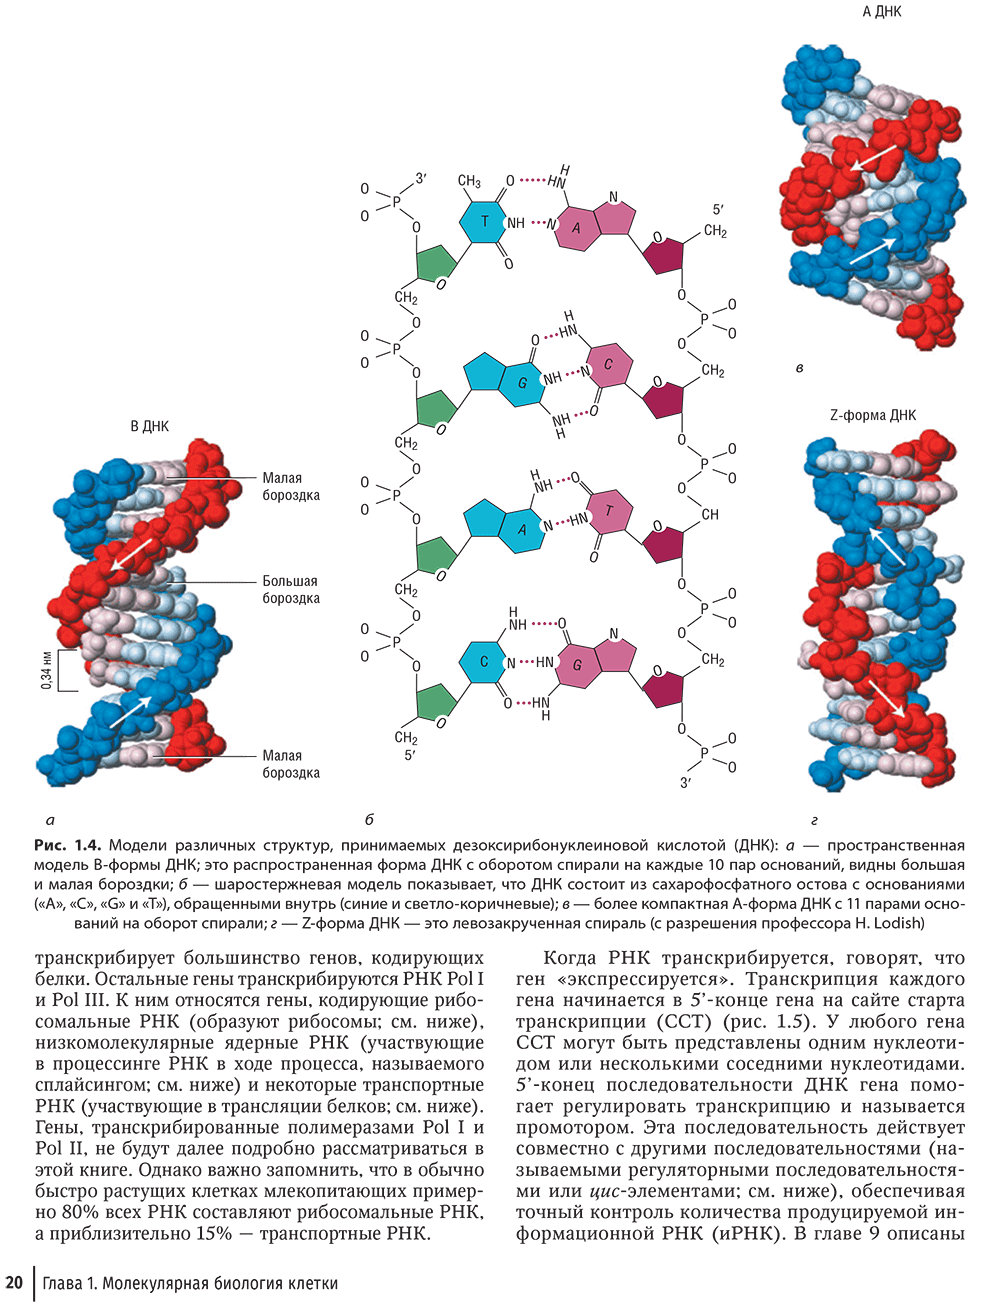 Модели различных структур, принимаемых дезоксирибонуклеиновой кислотой (ДНК)